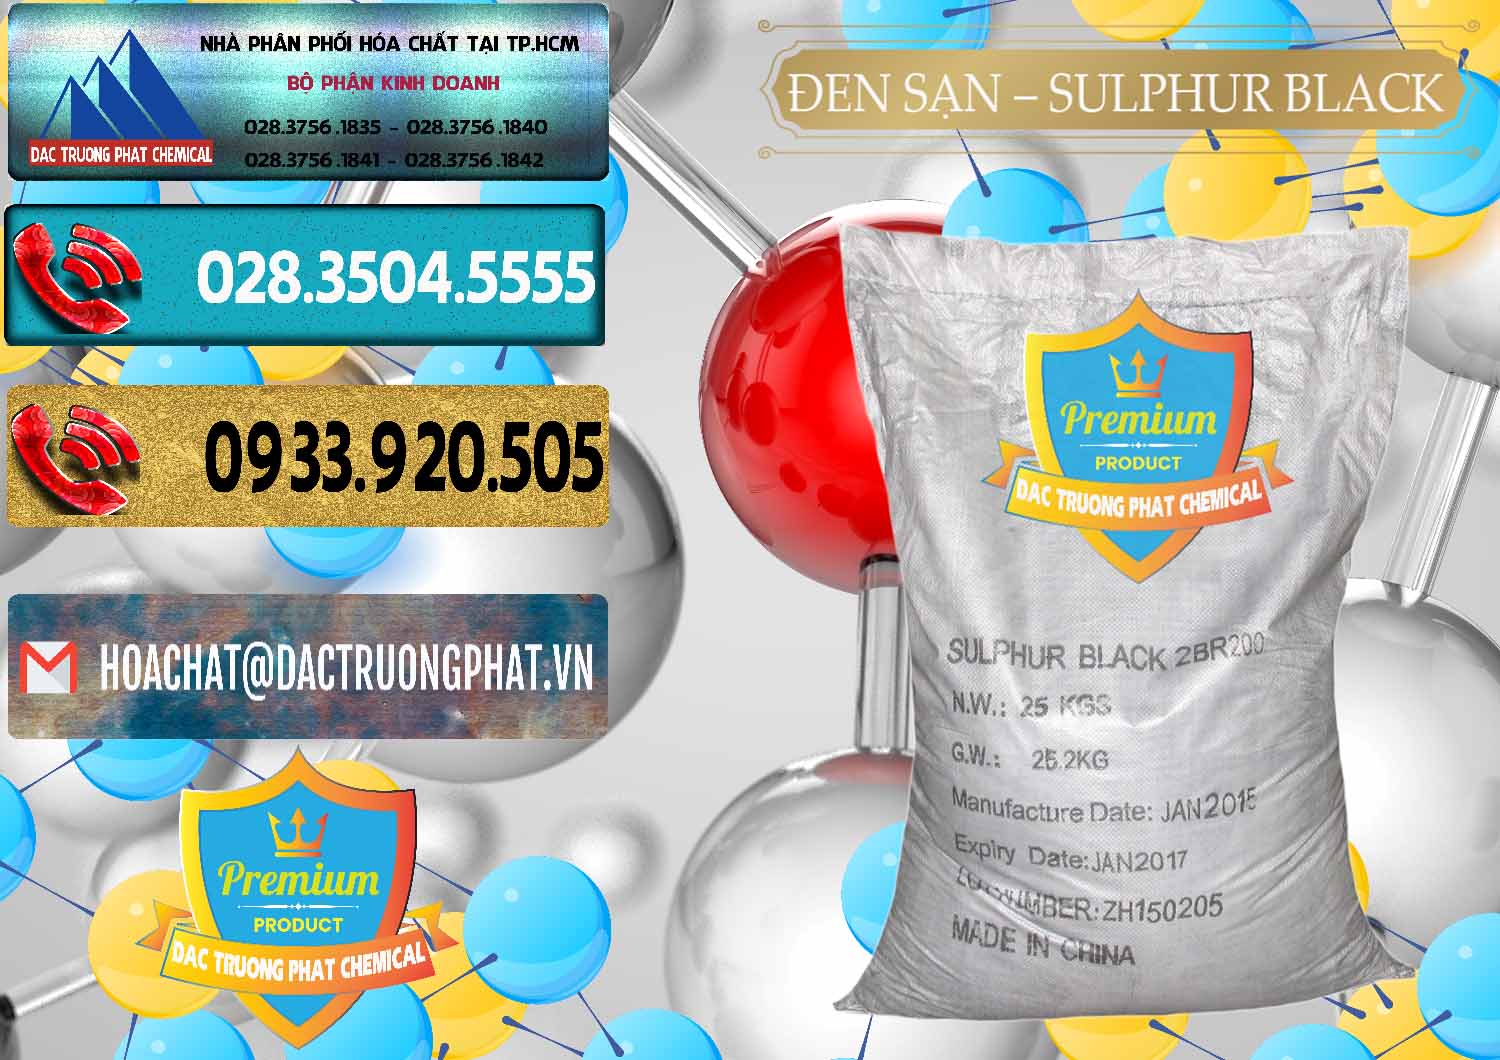 Bán & phân phối Đen Sạn – Sulphur Black Trung Quốc China - 0062 - Đơn vị cung cấp - kinh doanh hóa chất tại TP.HCM - hoachatdetnhuom.com